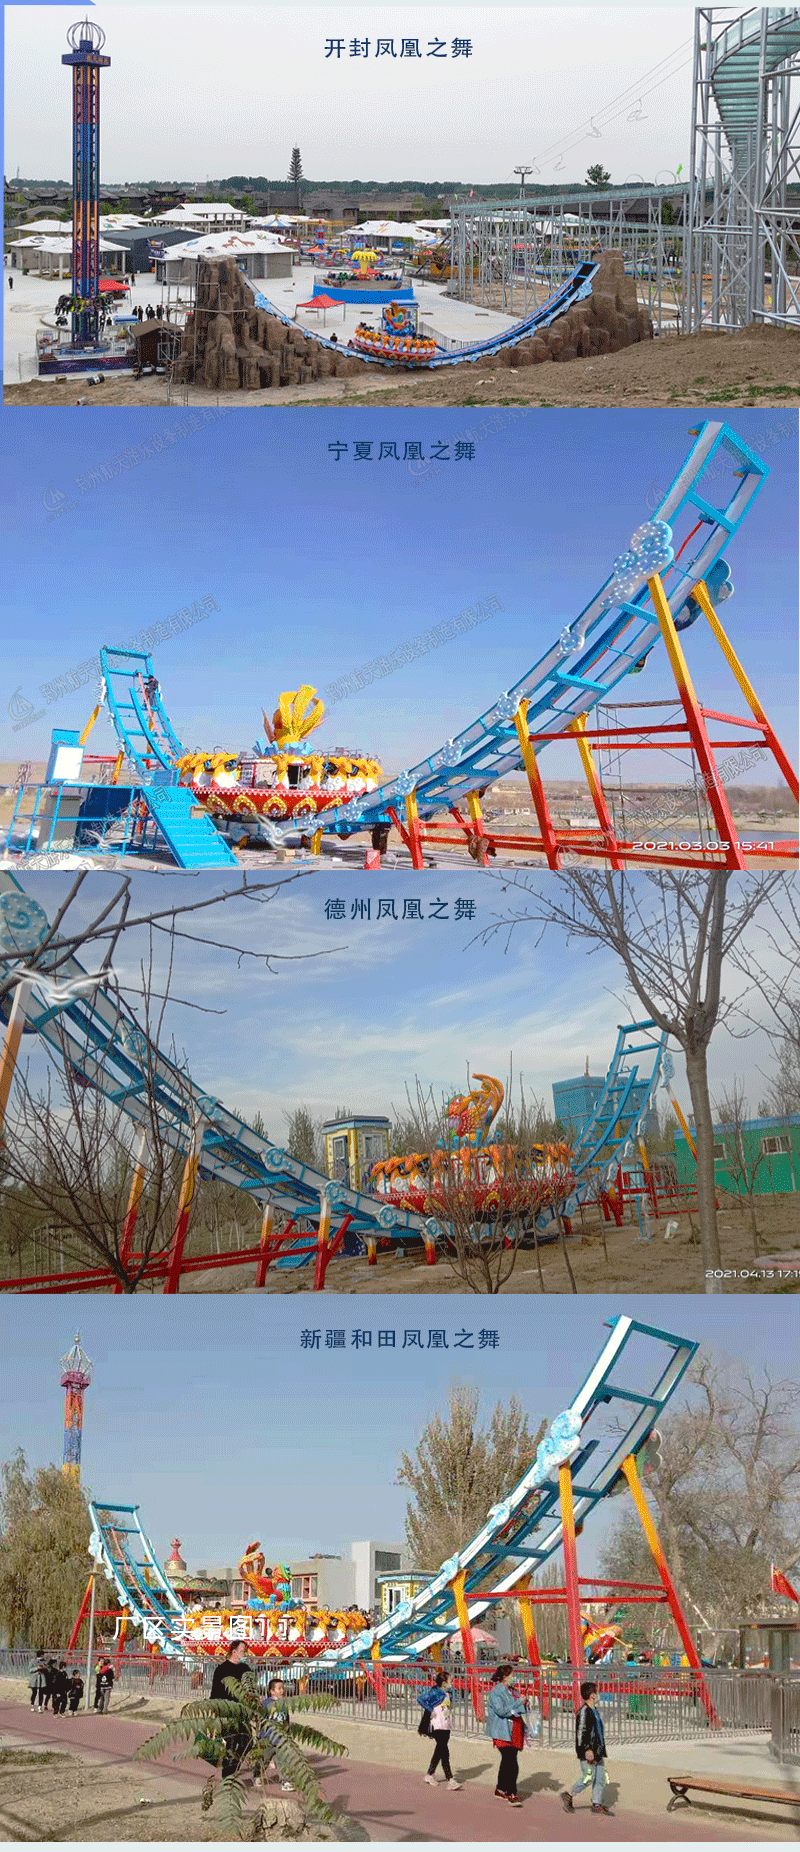 郑州新型大型轨道飞碟游乐园设施航天游乐厂家 4